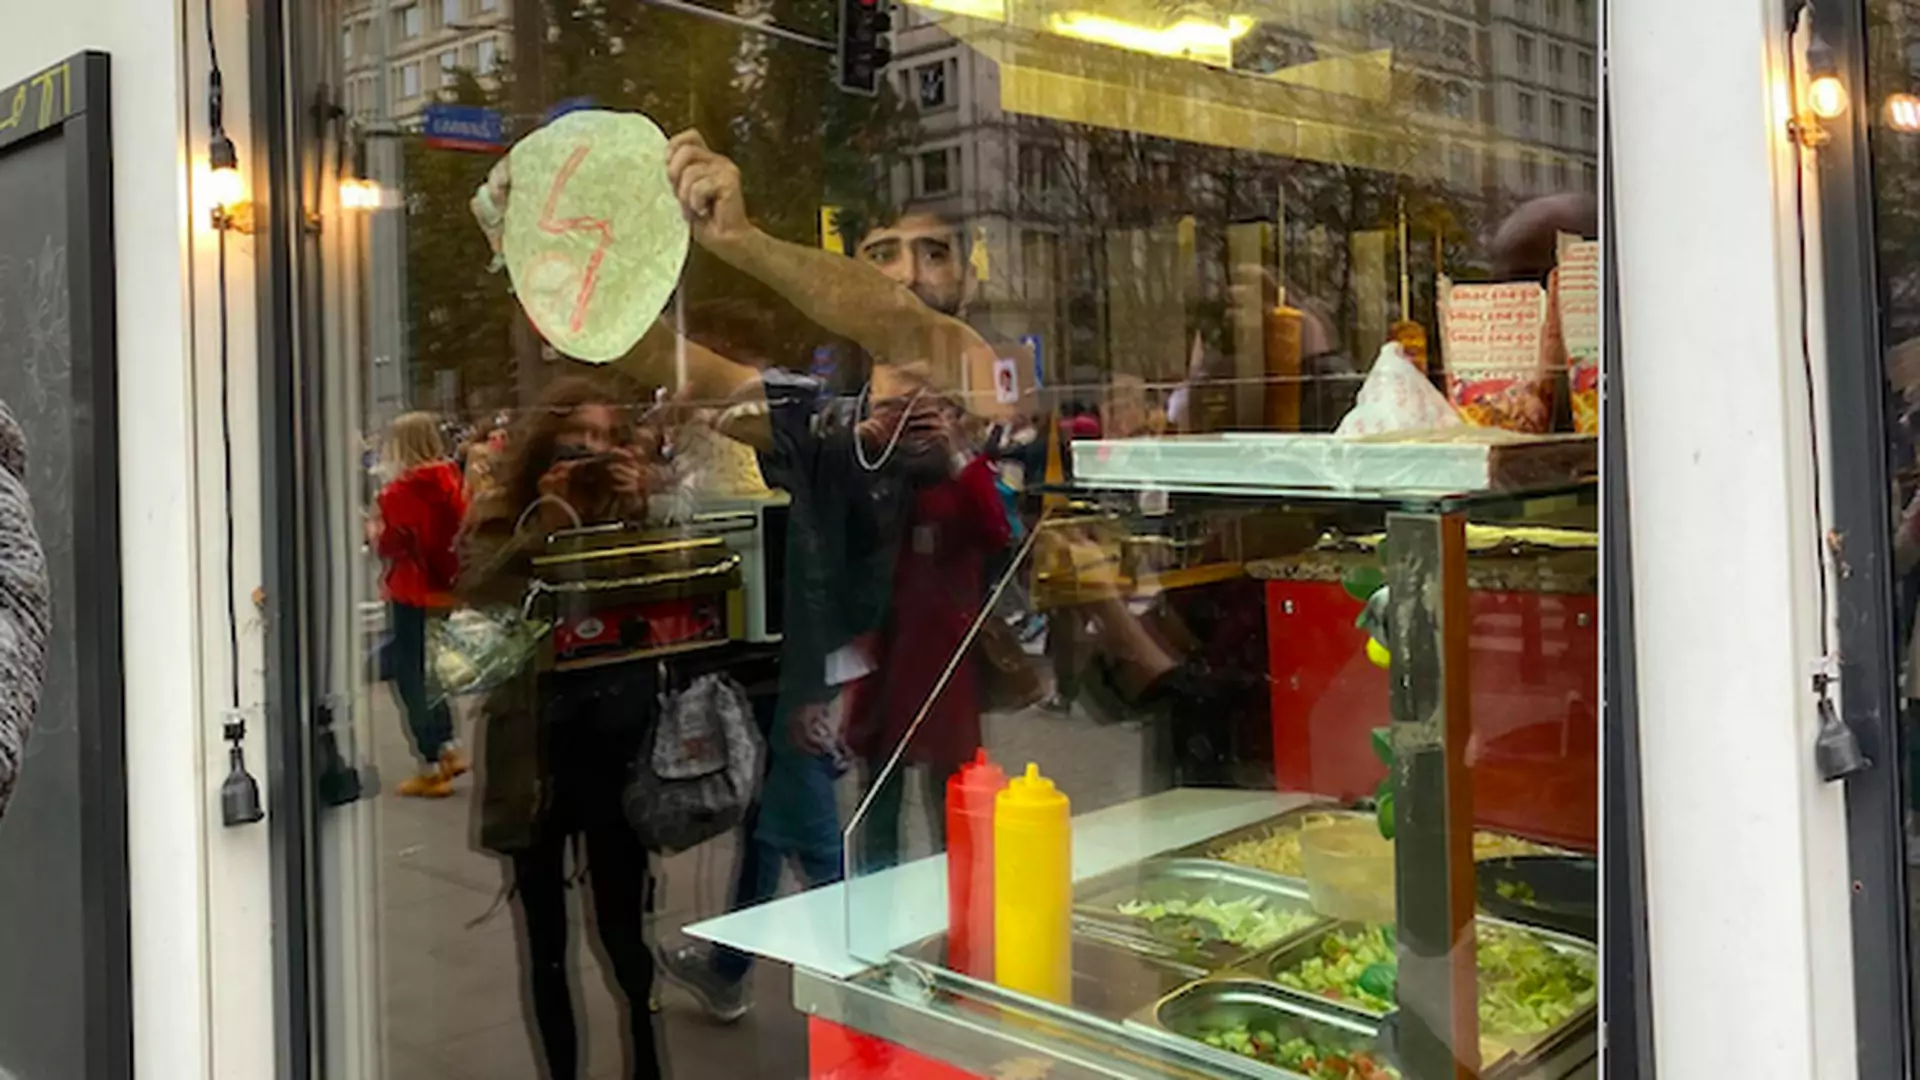 Pracownik kebaba namalował błyskawicę na tortilli. 15 najlepszych transparentów strajku